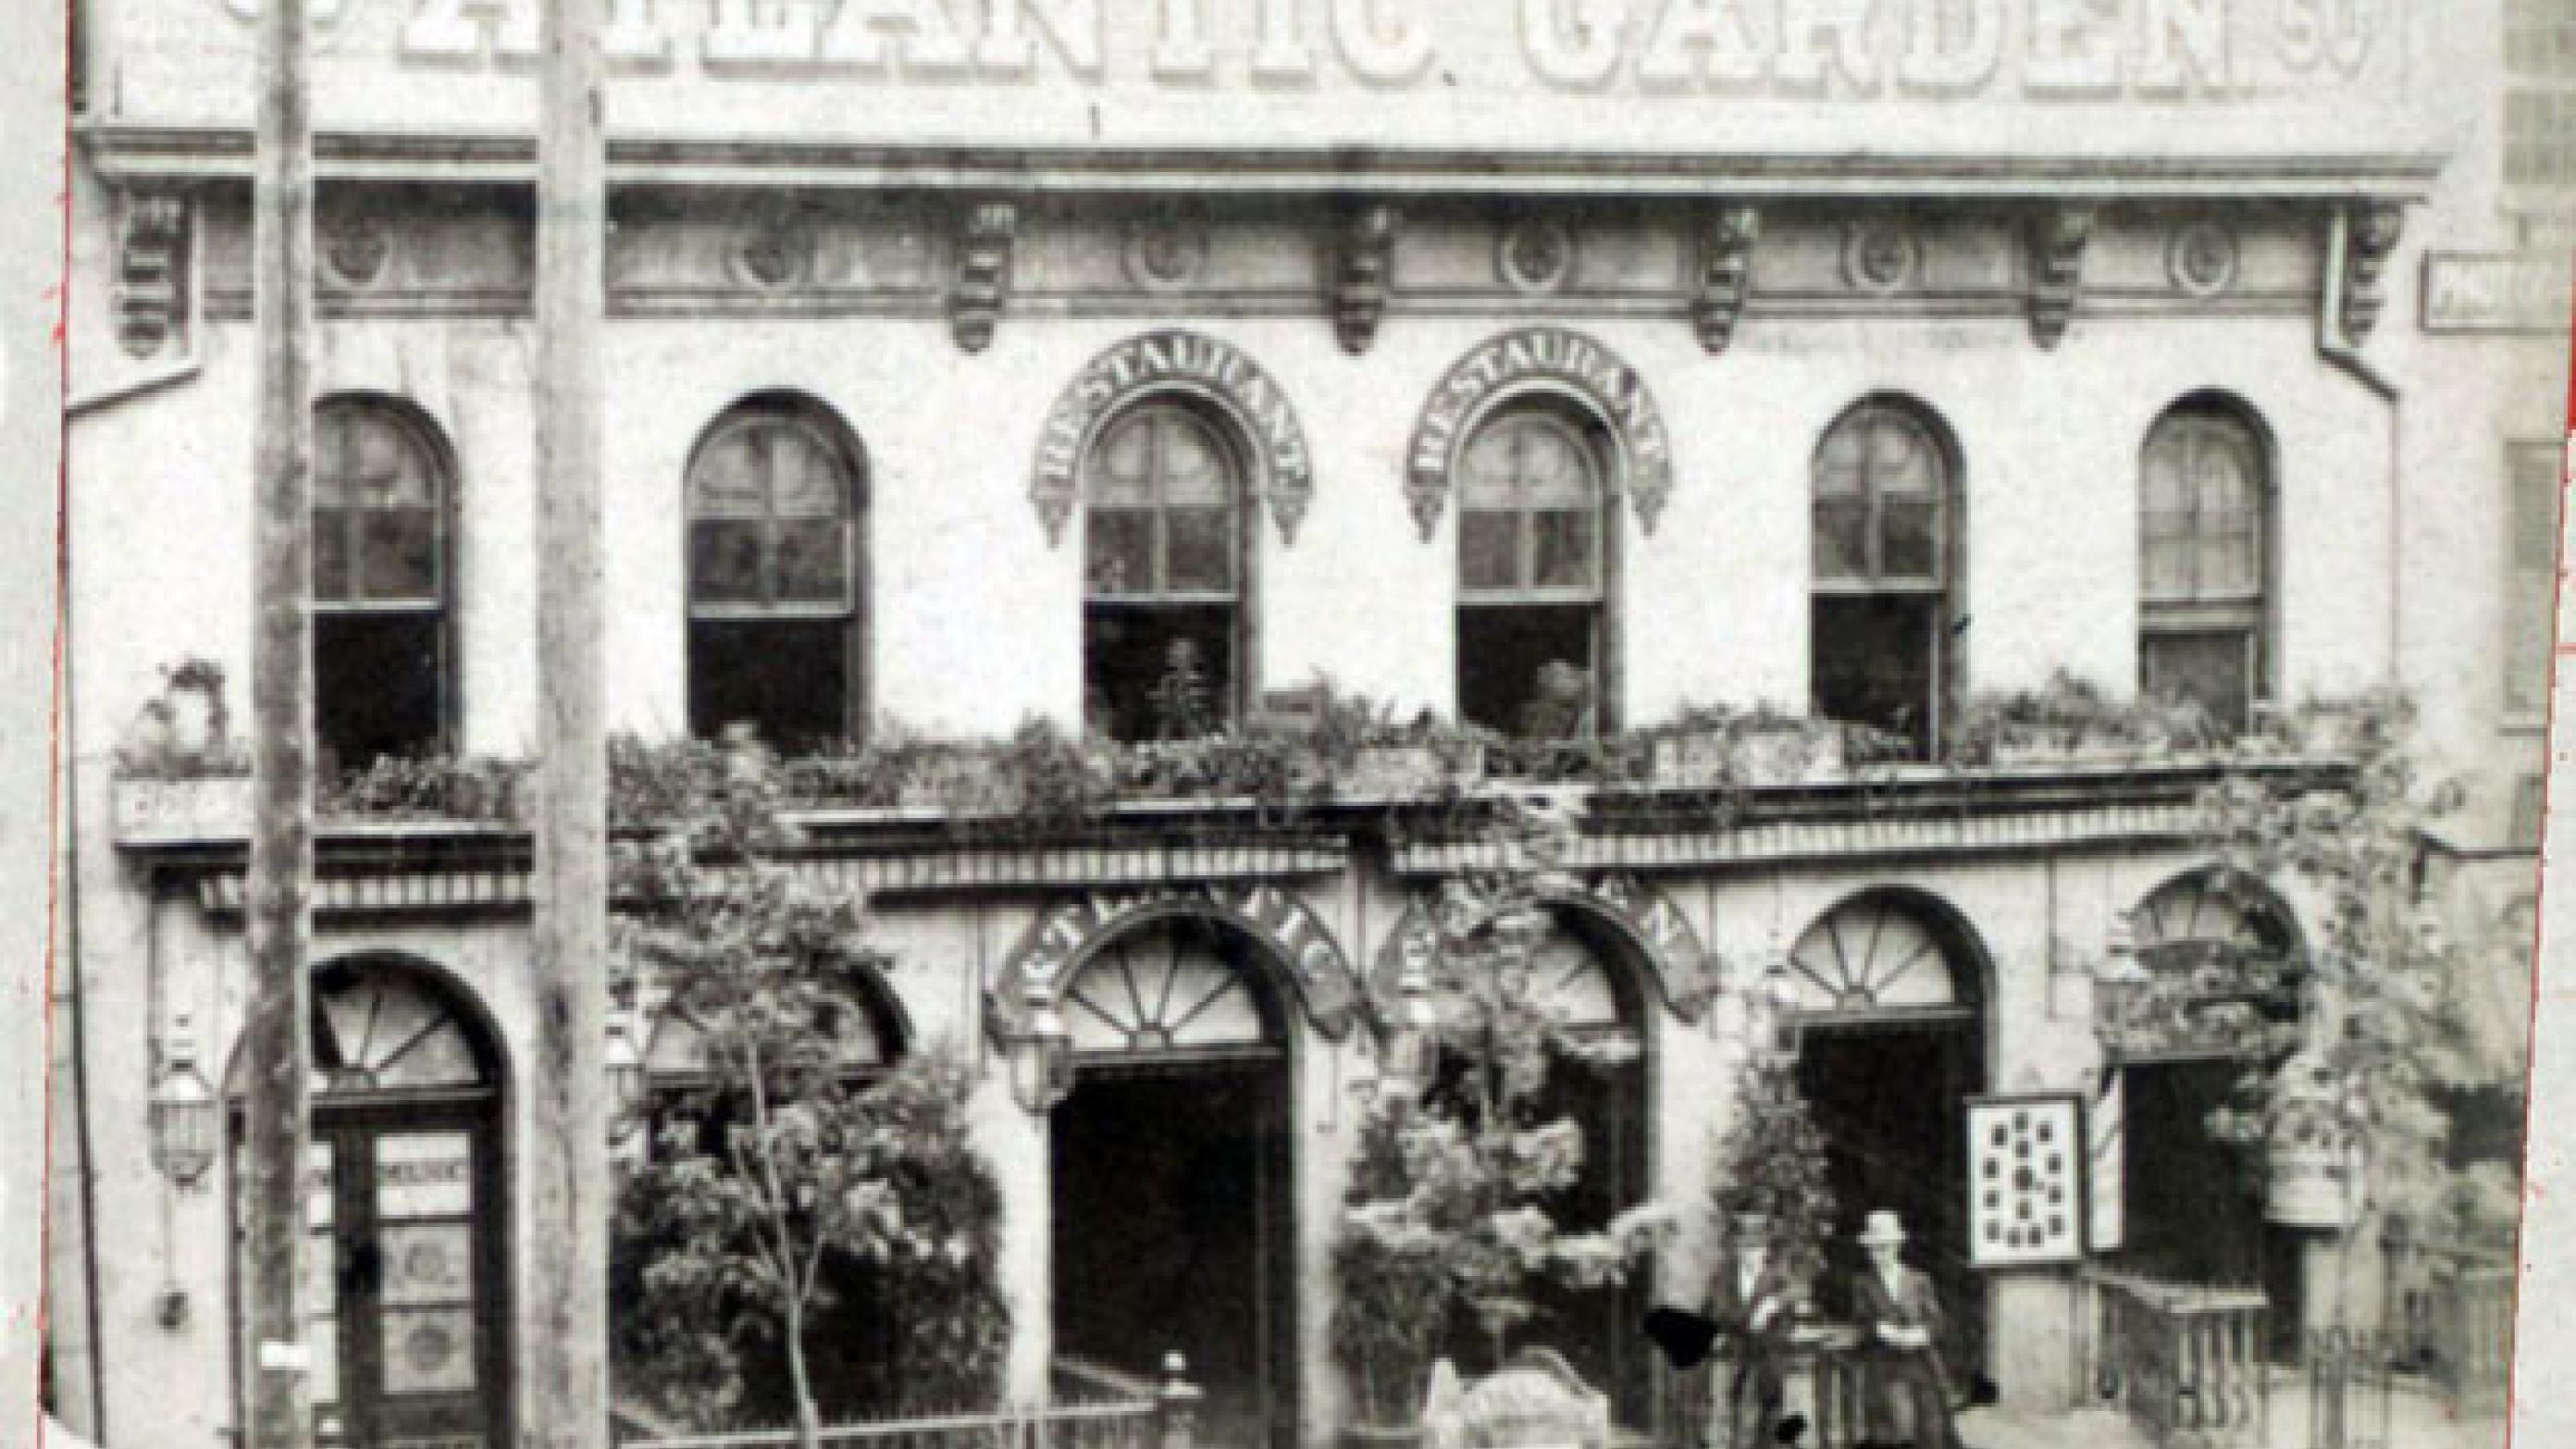 Atlantic Garden i New Yorks tyske kvarter i 1890 – i dag Chinatown på Manhattans Lower East Side. Ud over øl kunne man også få patentmedicin og mavebitter efter tysk opskrift. (Wikipedia)